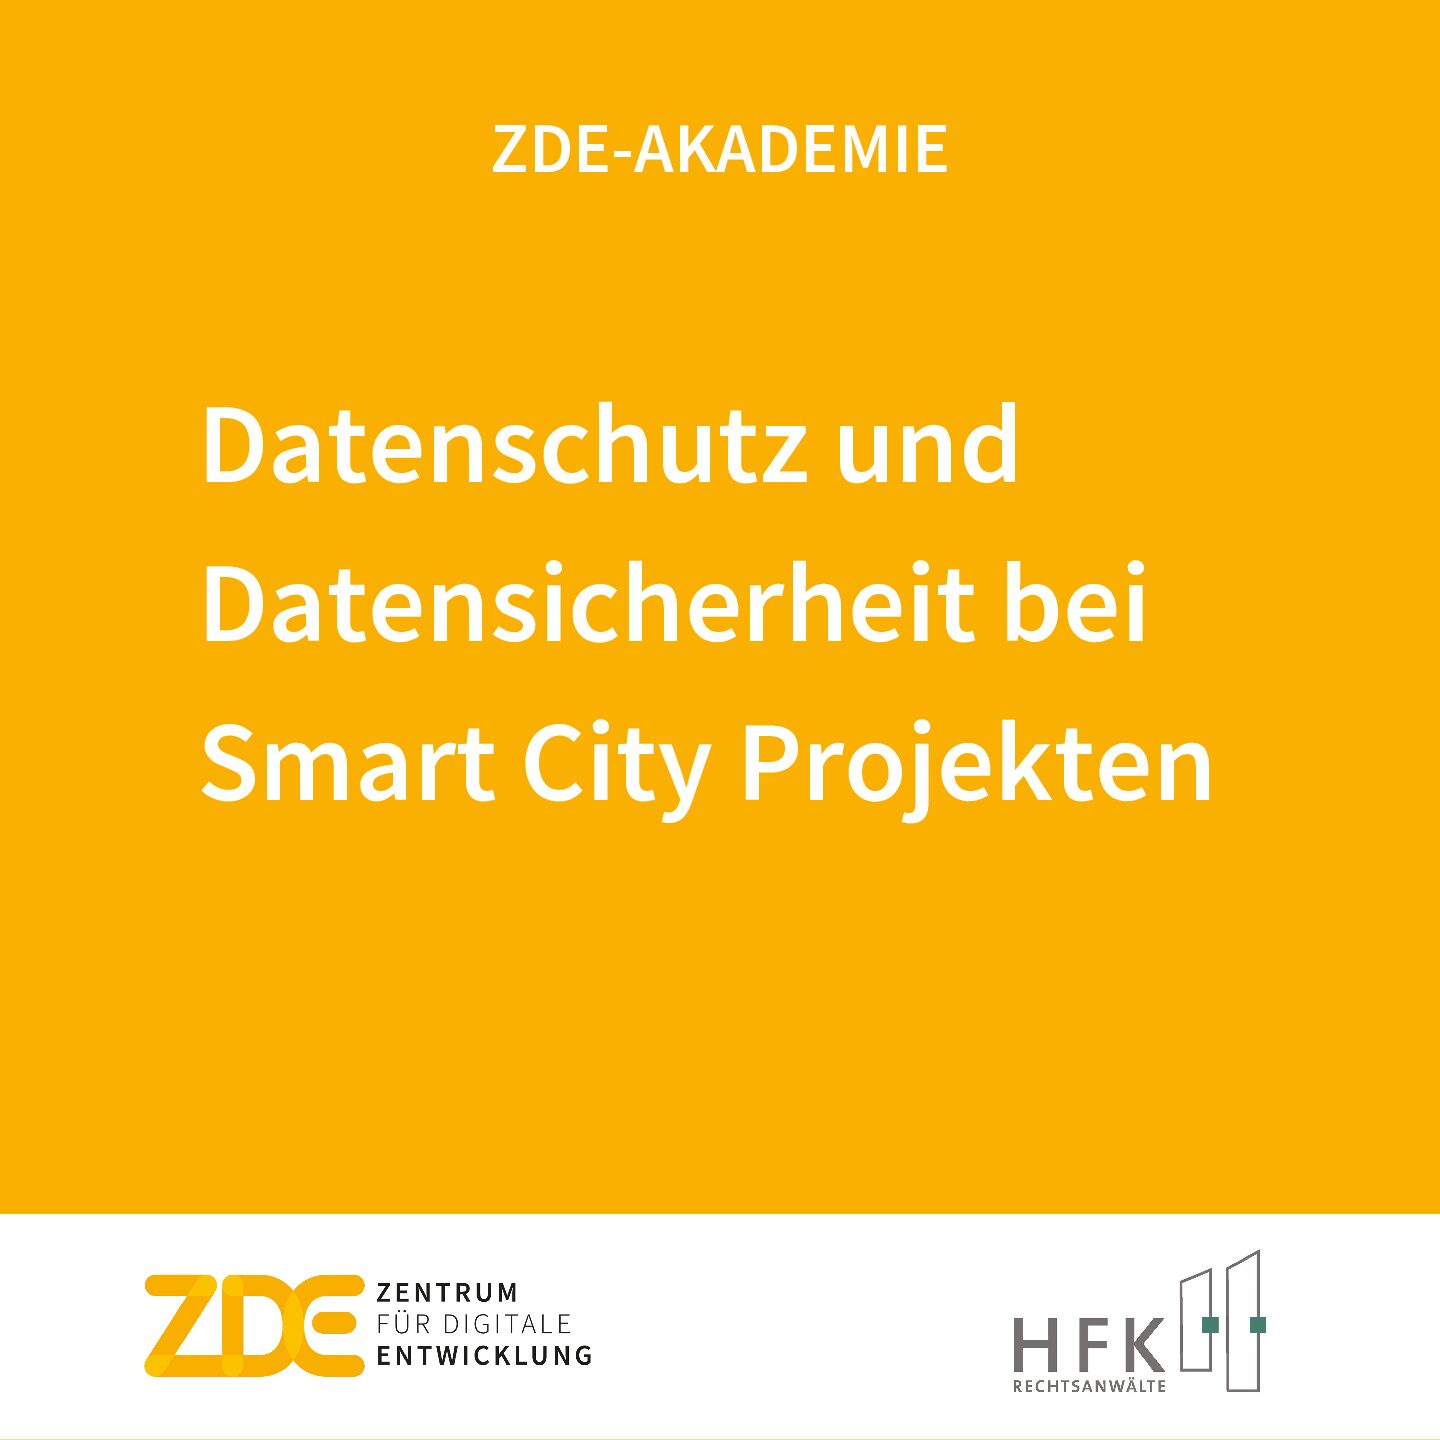 Datenschutz und Datensicherheit bei Smart City Projekten